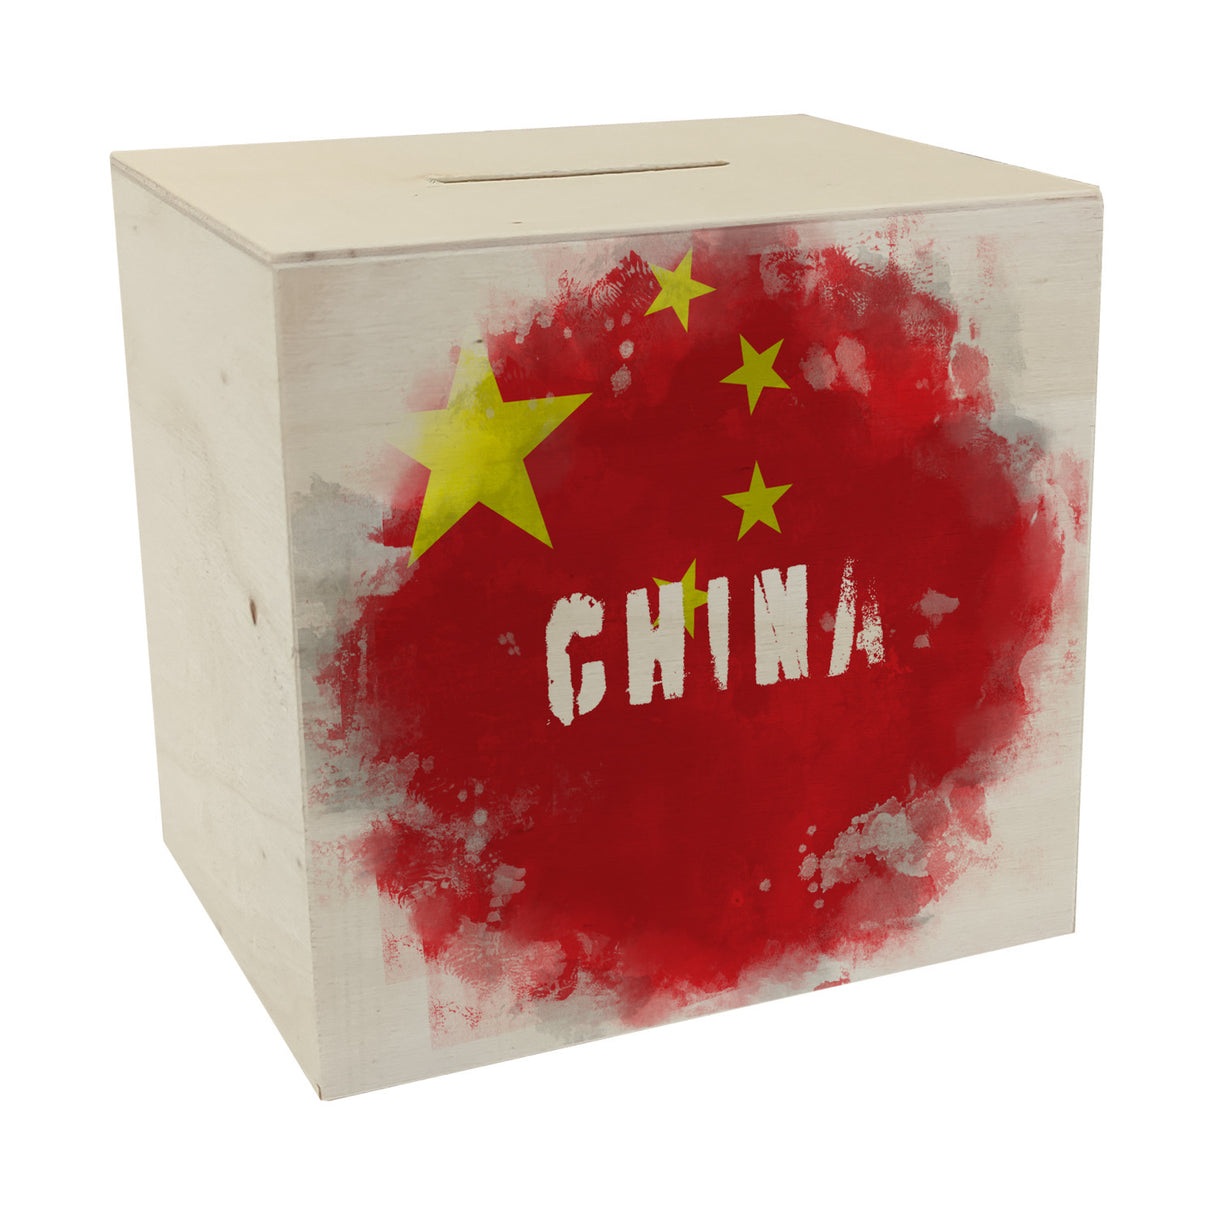 Spardose mit China-Flagge im Used Look - Sparschwein für Urlauber